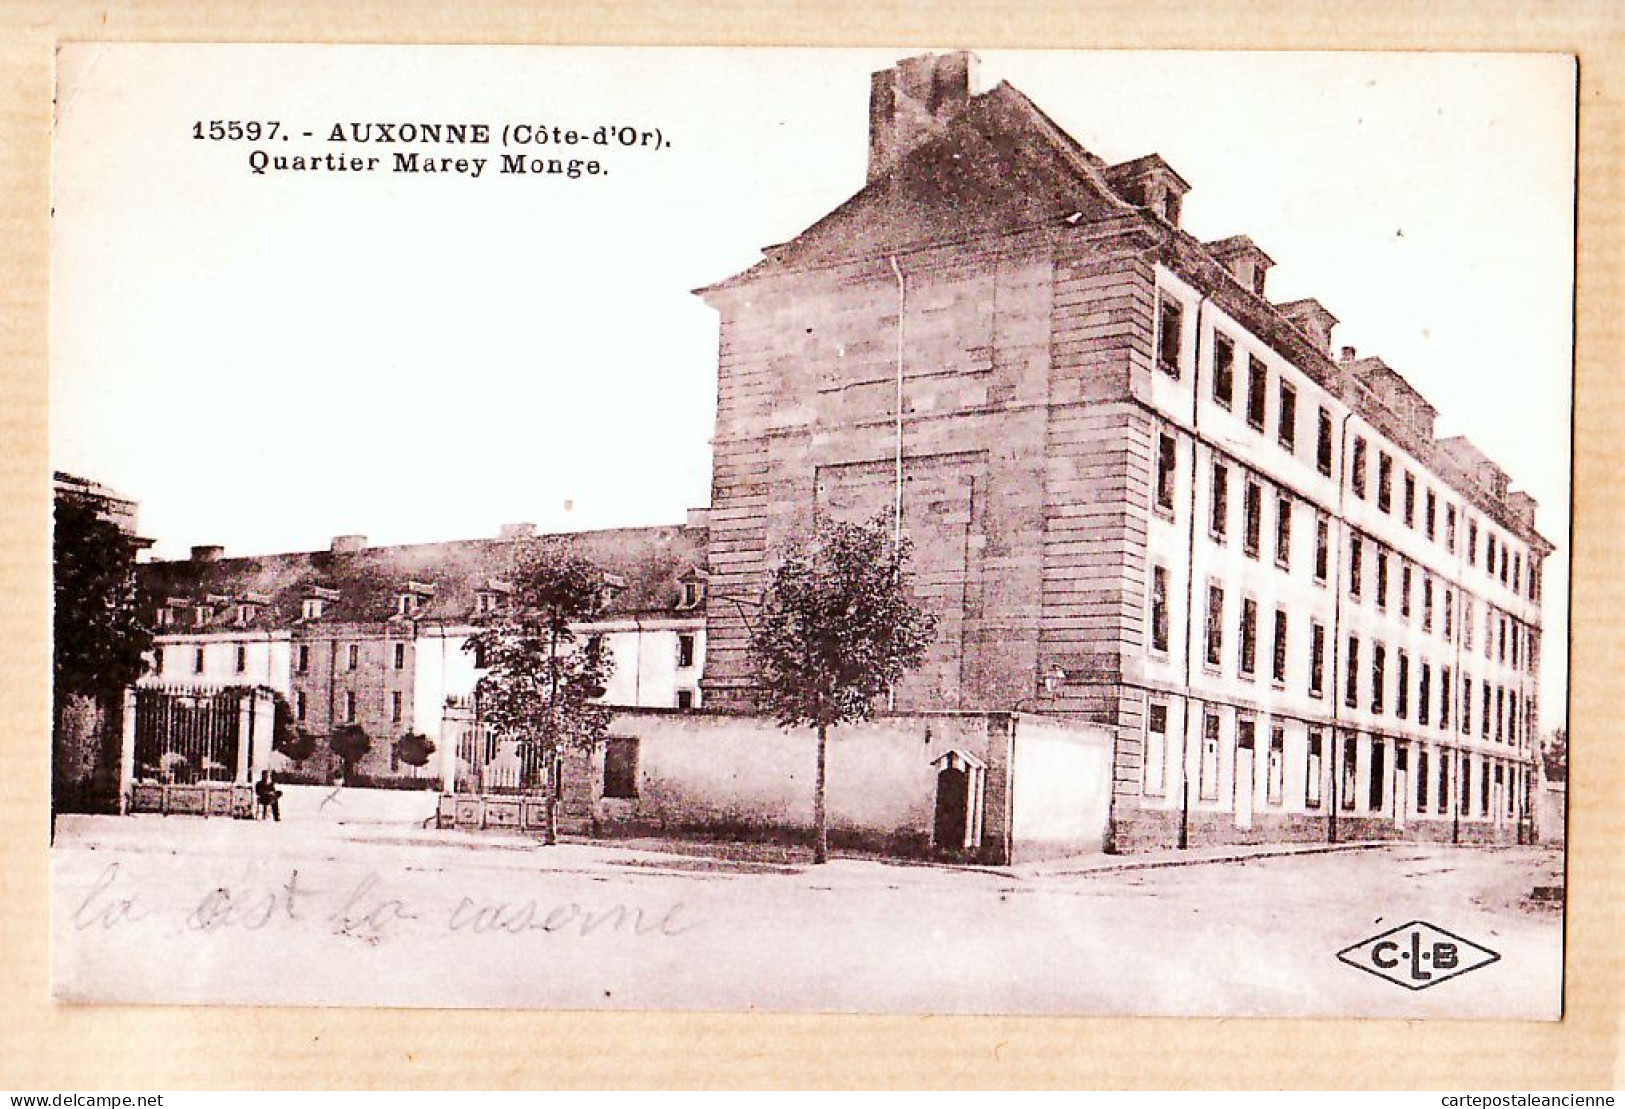 22112 / ⭐ AUXONNE 21-Cote Or Caserne Quartier MAREY MONGE 27.11.1927 ¤ LARDIER C-L-B 15597 - Auxonne